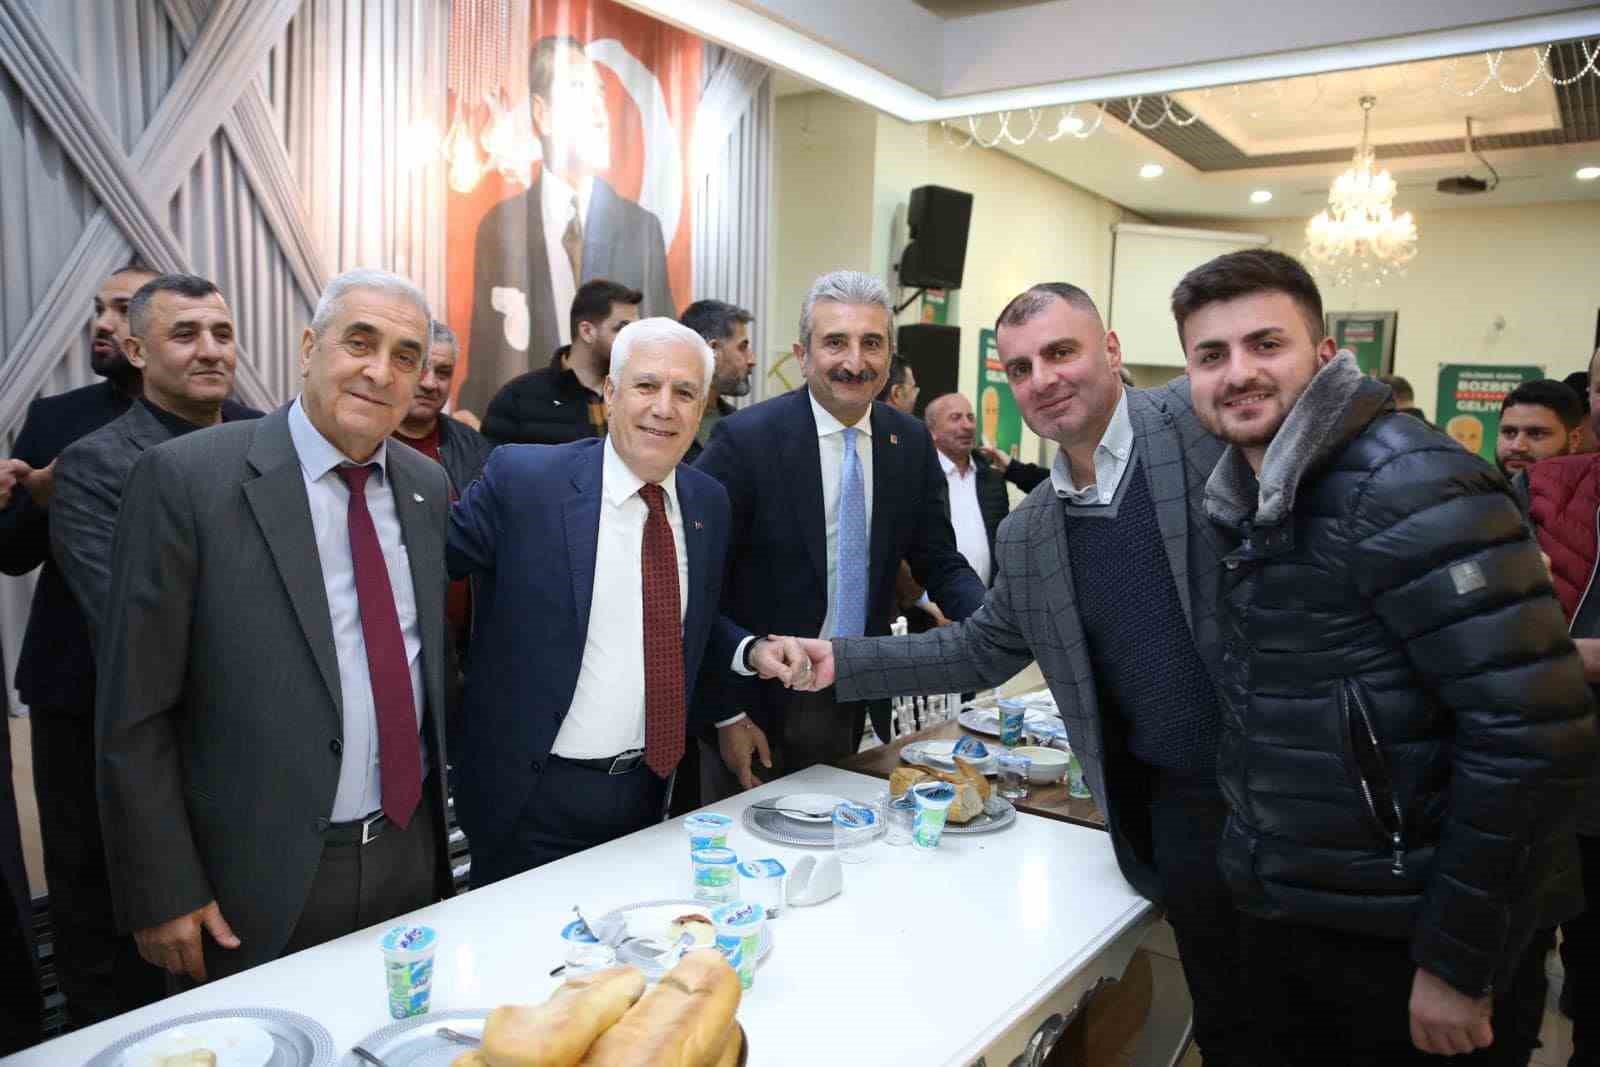 Başkan adayı Mustafa Bozbey: “Altyapı sorununu Büyükşehir Belediyesi’nin çözmesi gerekiyor”